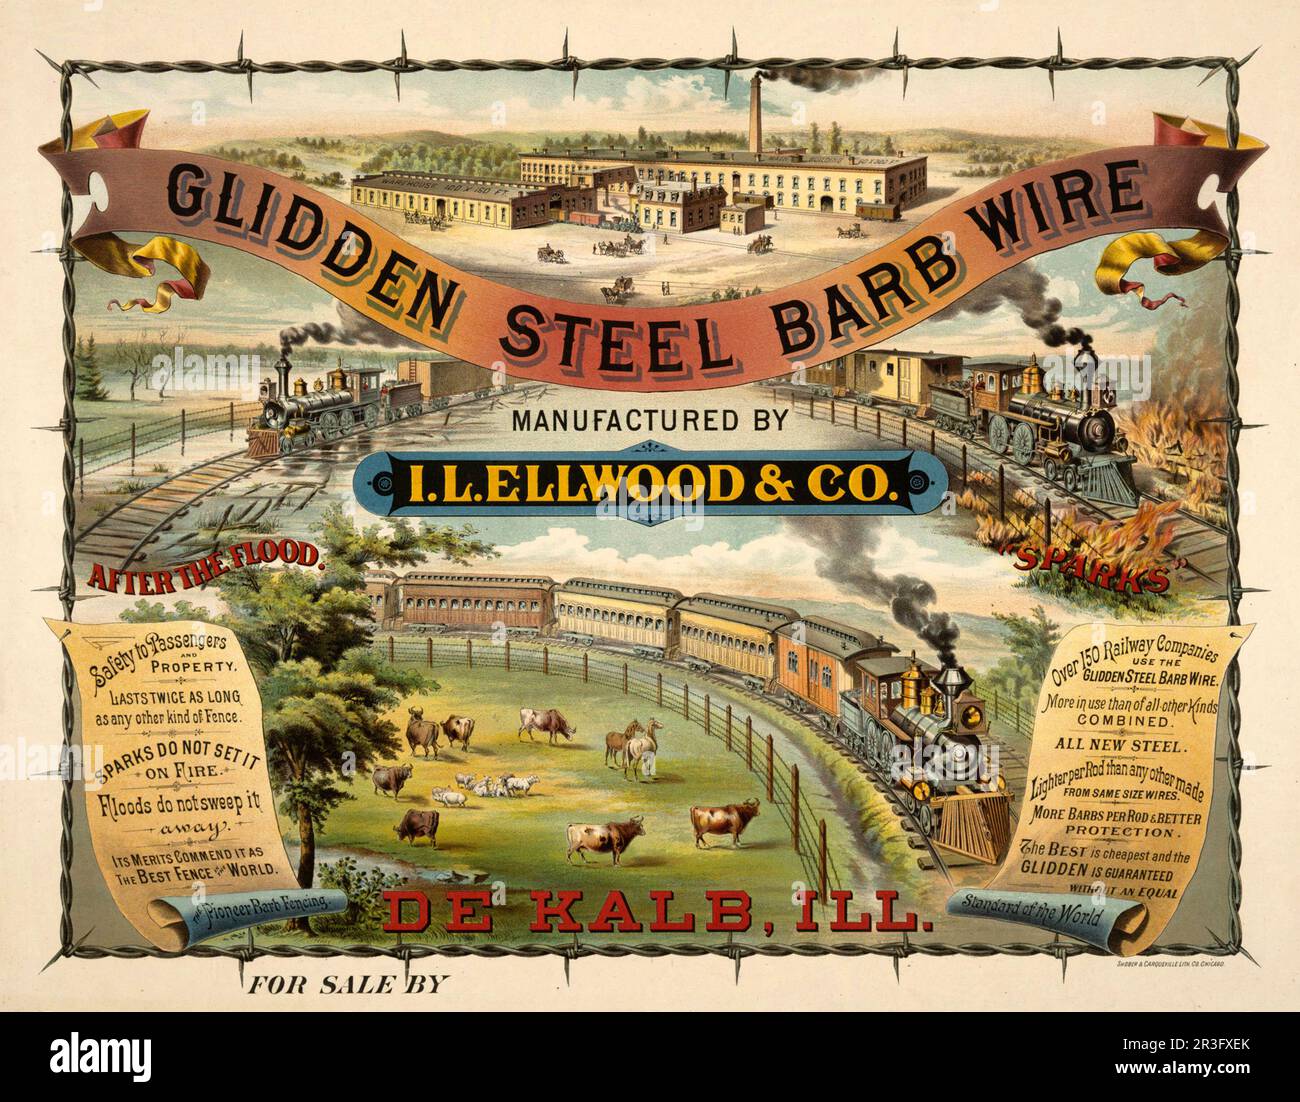 Anuncio vintage para alambre de púas de acero Glidden fabricado por I. L. Ellwood & Co. Foto de stock